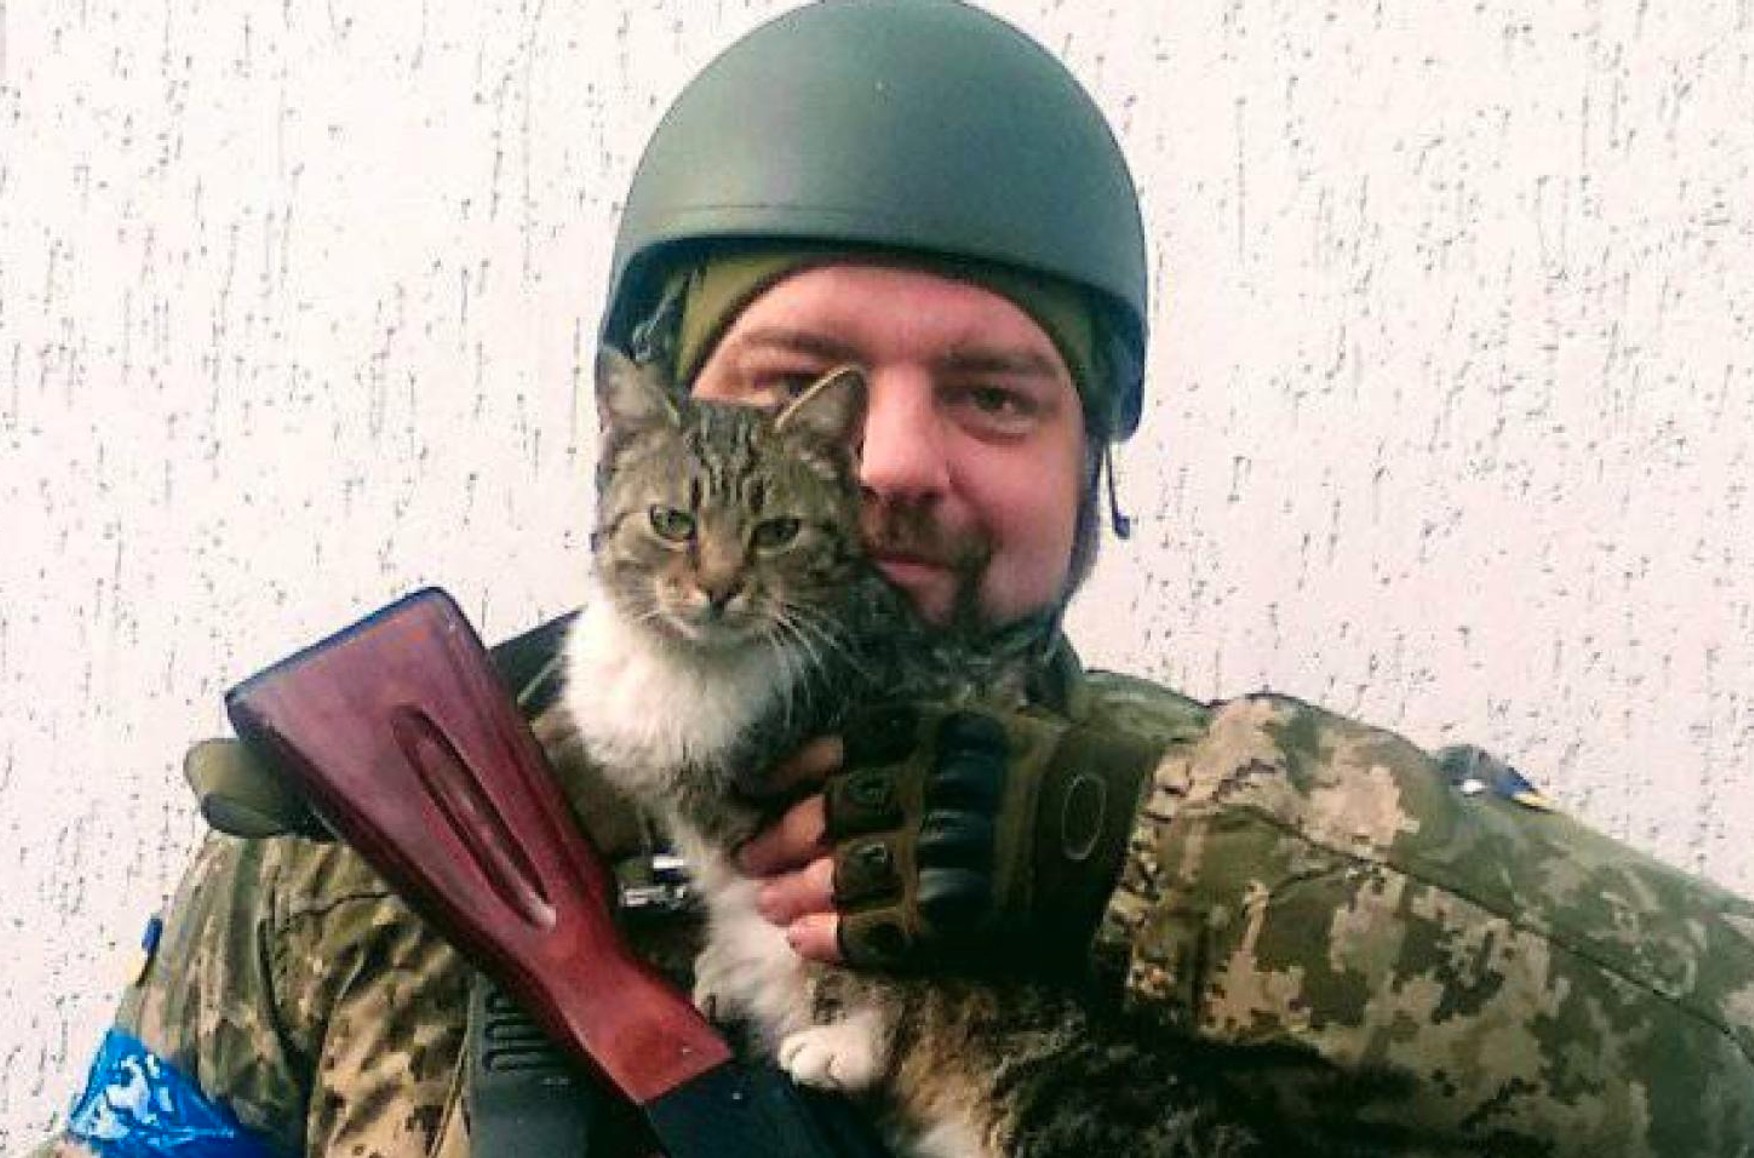 «Ґрати»: Максима Буткевича, осужденного за стрельбу по гражданским в Северодонецке в июне, тогда не было на Донбассе